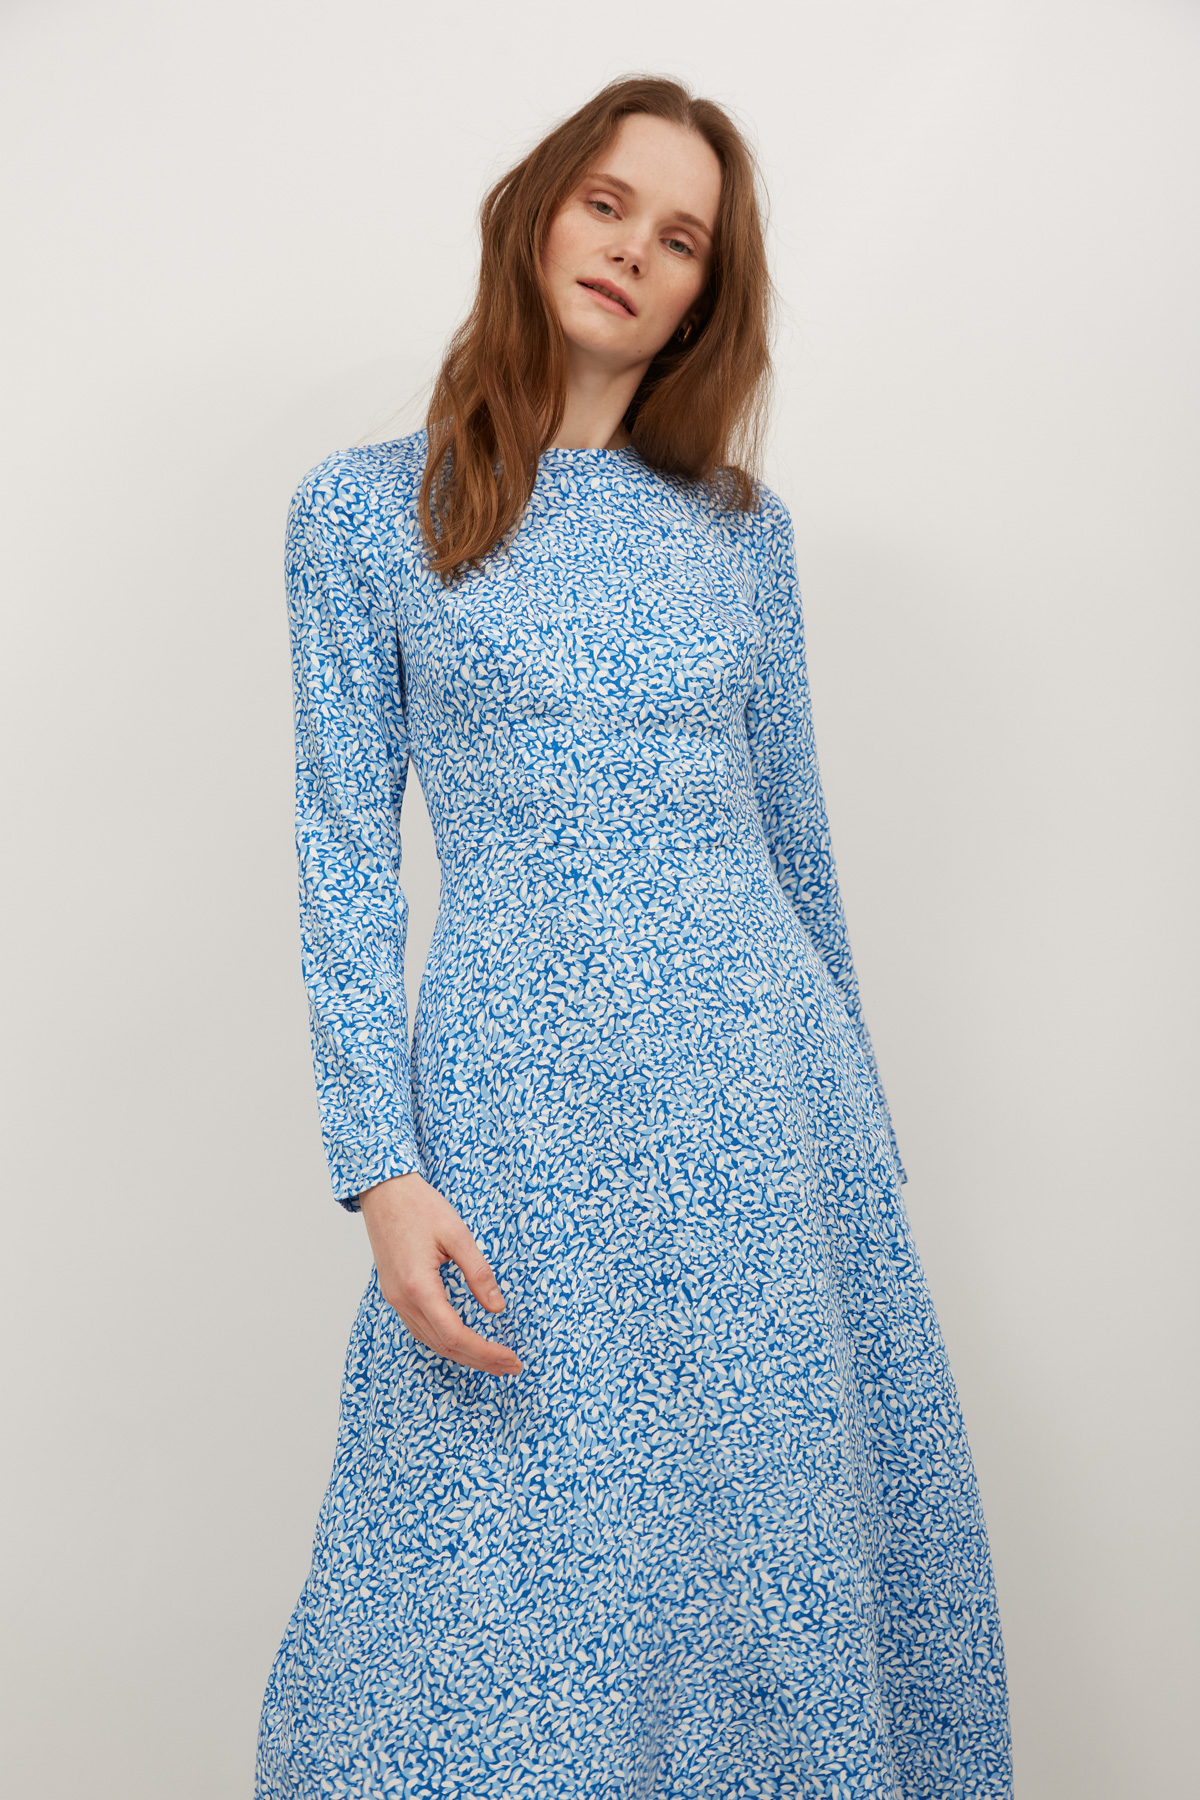 Віскозна сукня міді в принт сині краплі, фото 3